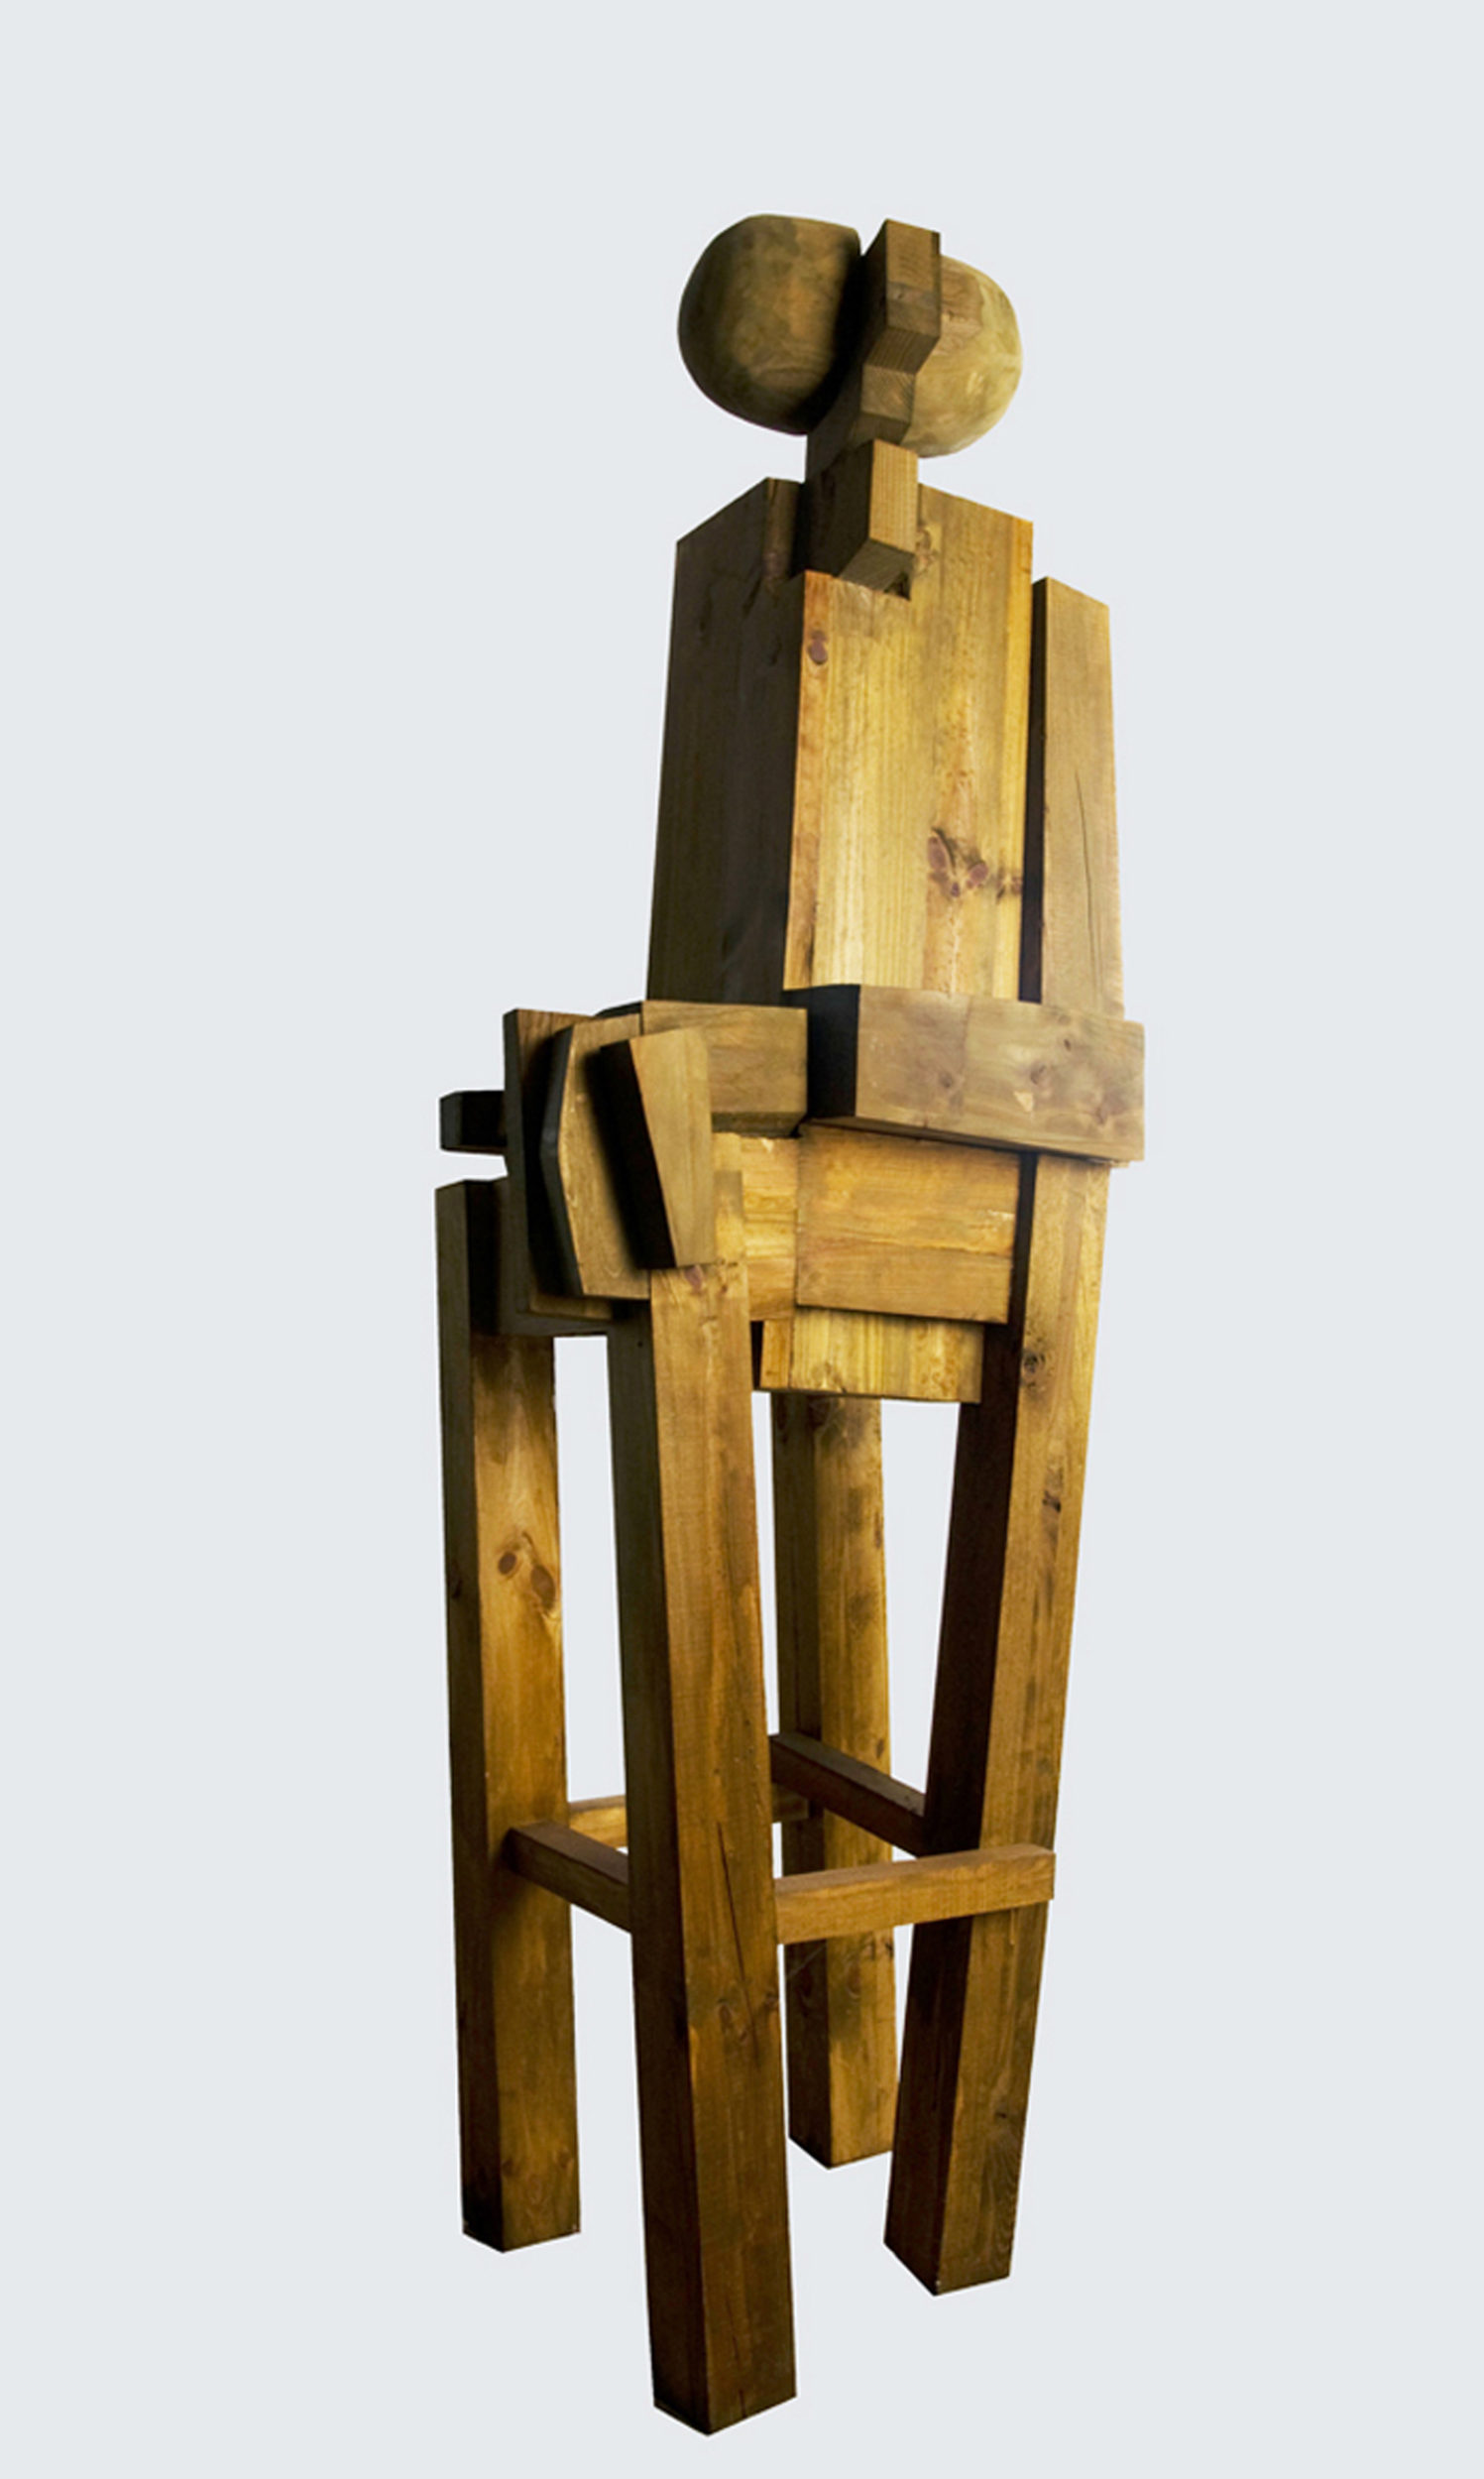 Studium postaci, 2010 rok, drewno klejone, patynowane, 180 x 50 x 60 cm